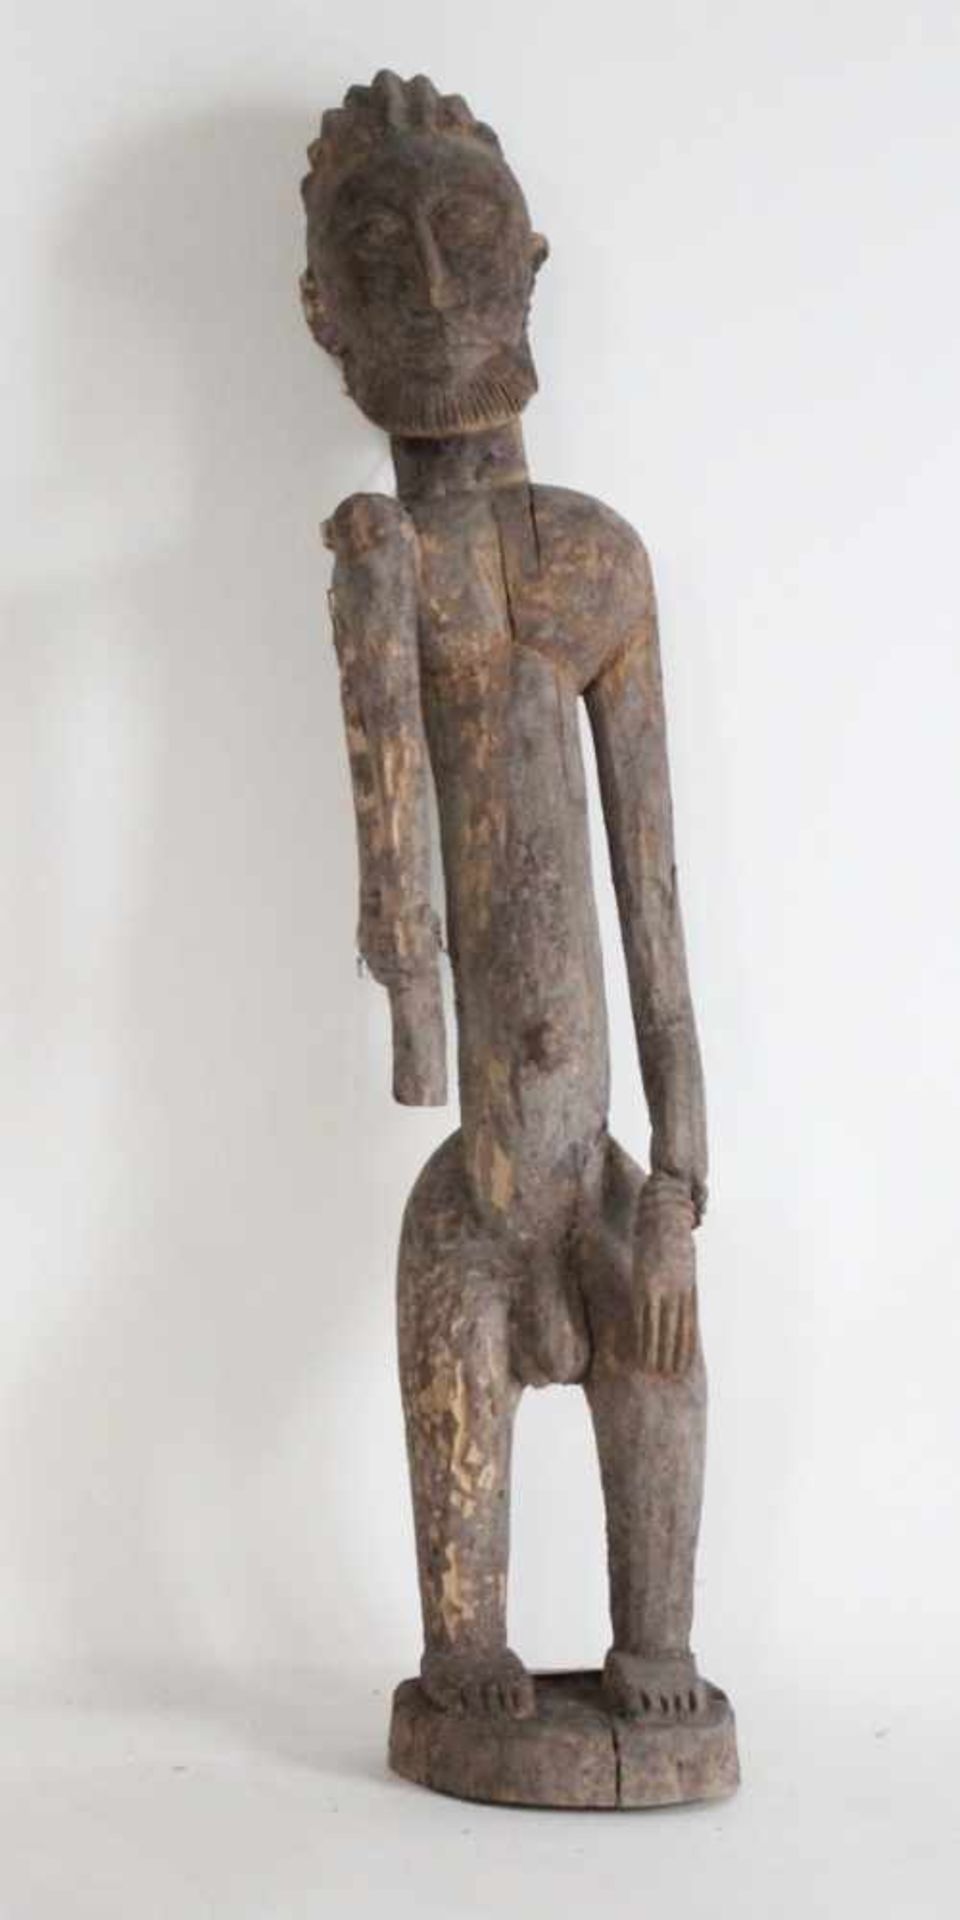 Männliche Ahnenfigur - Dogon/Mali Holz, stehend auf Sockel, mit Bart, Keule in der Hand, schiefer